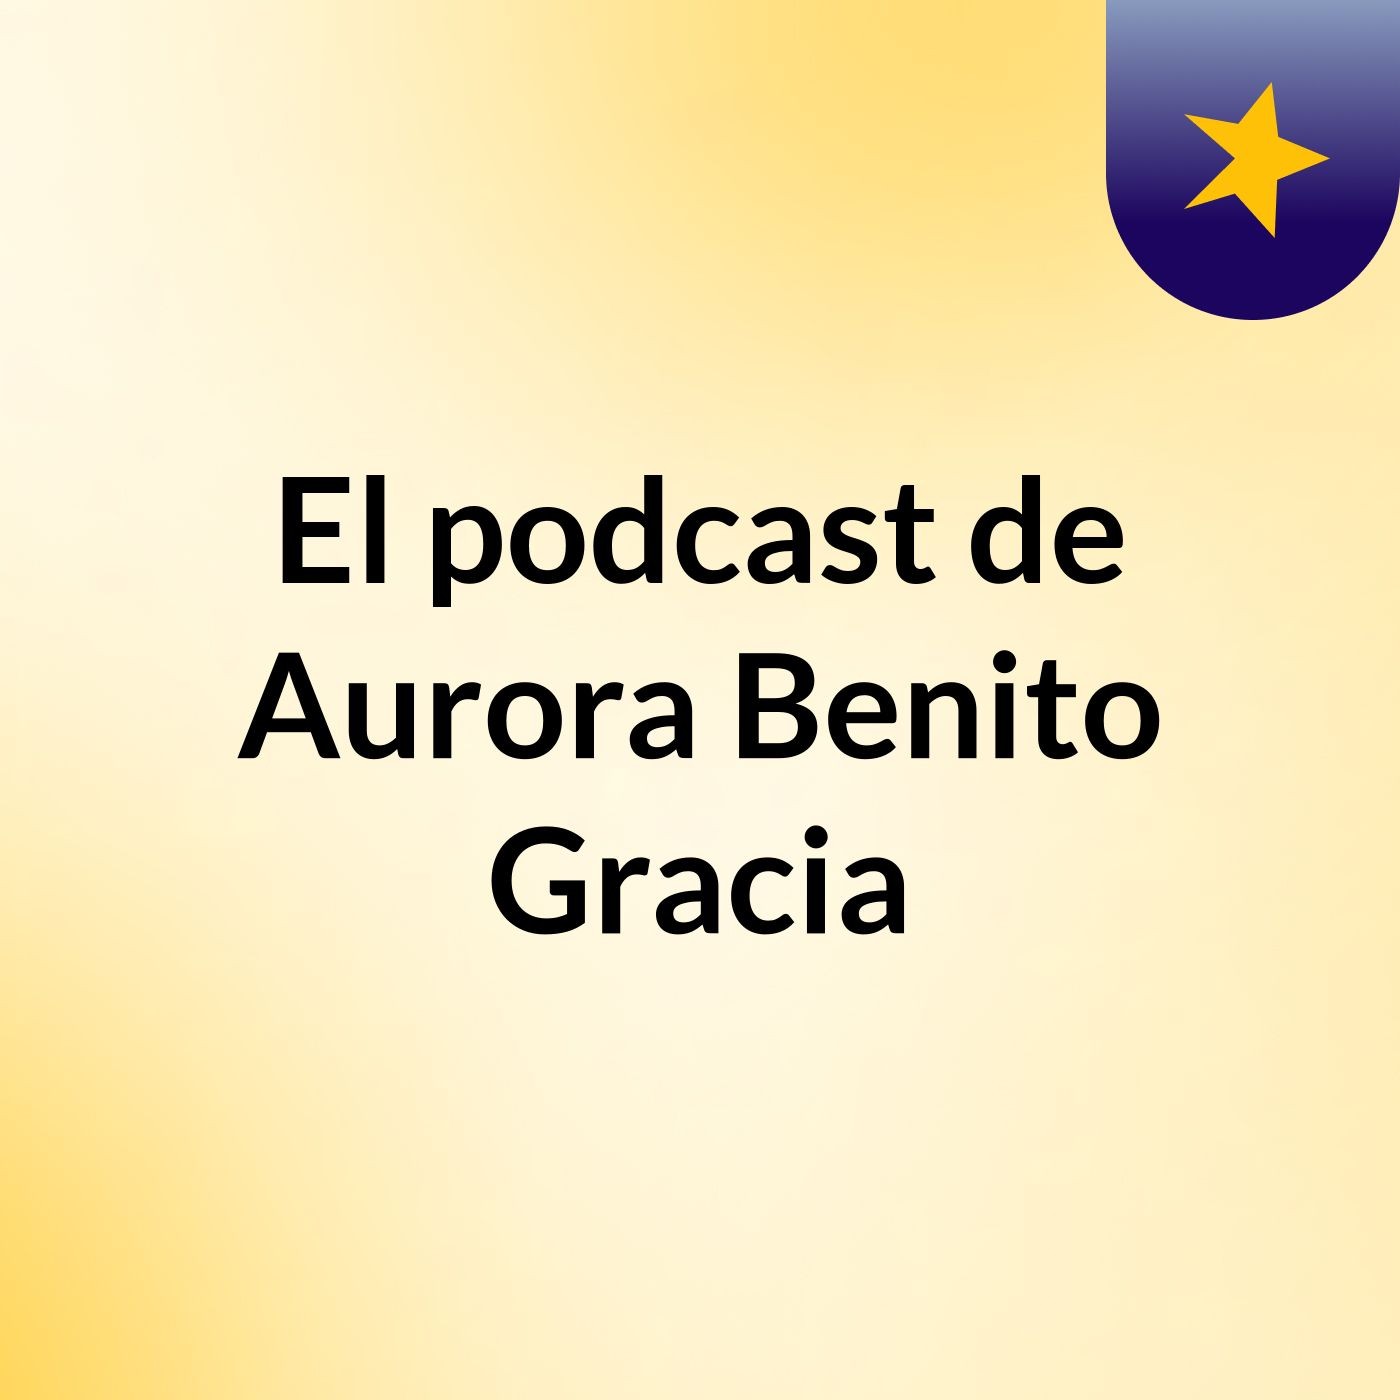 Episodio 8 - El podcast de Aurora Benito Gracia